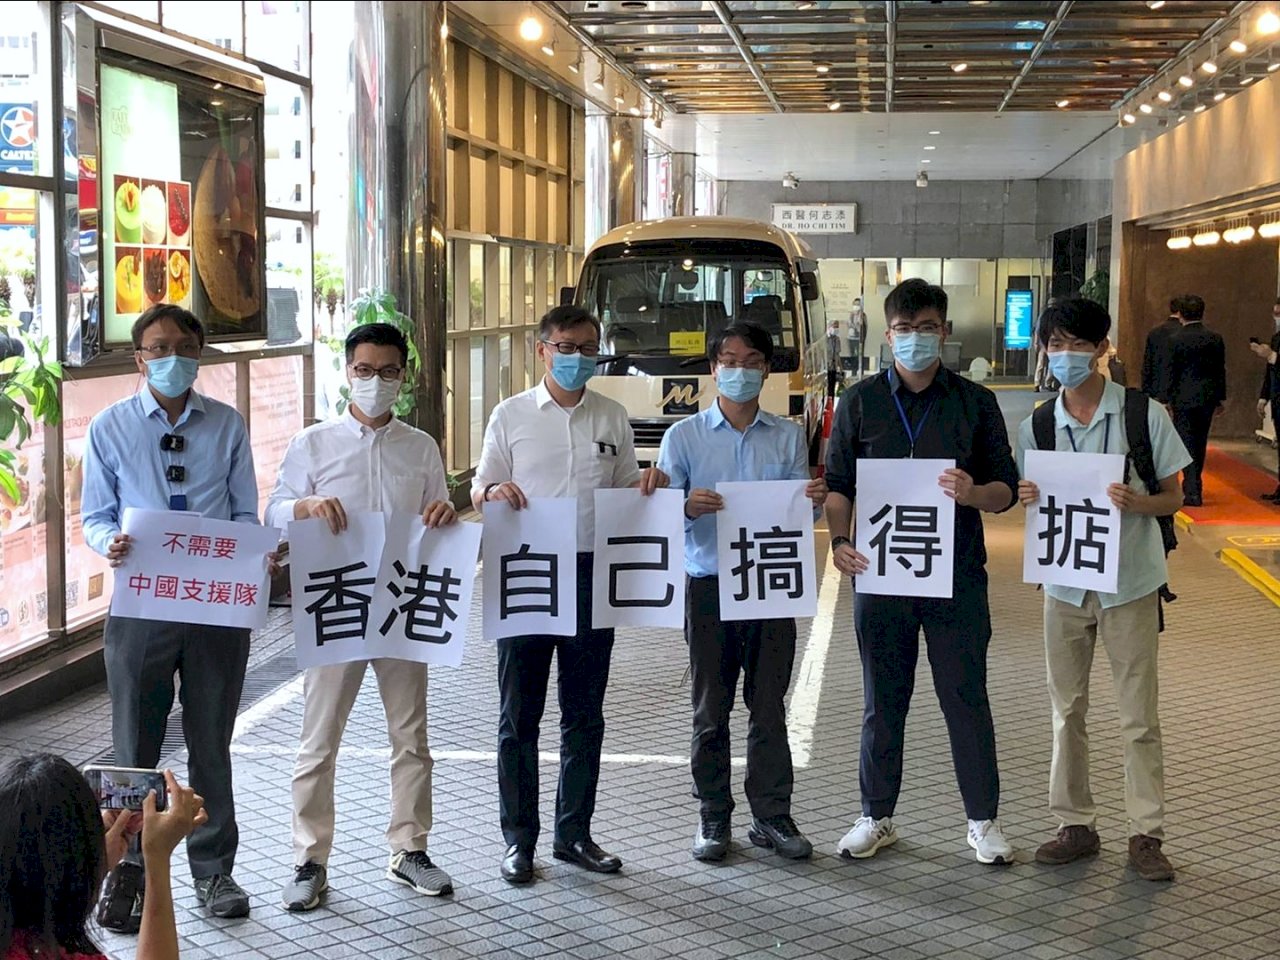 中國防疫人員續在港行程 泛民人士抗議